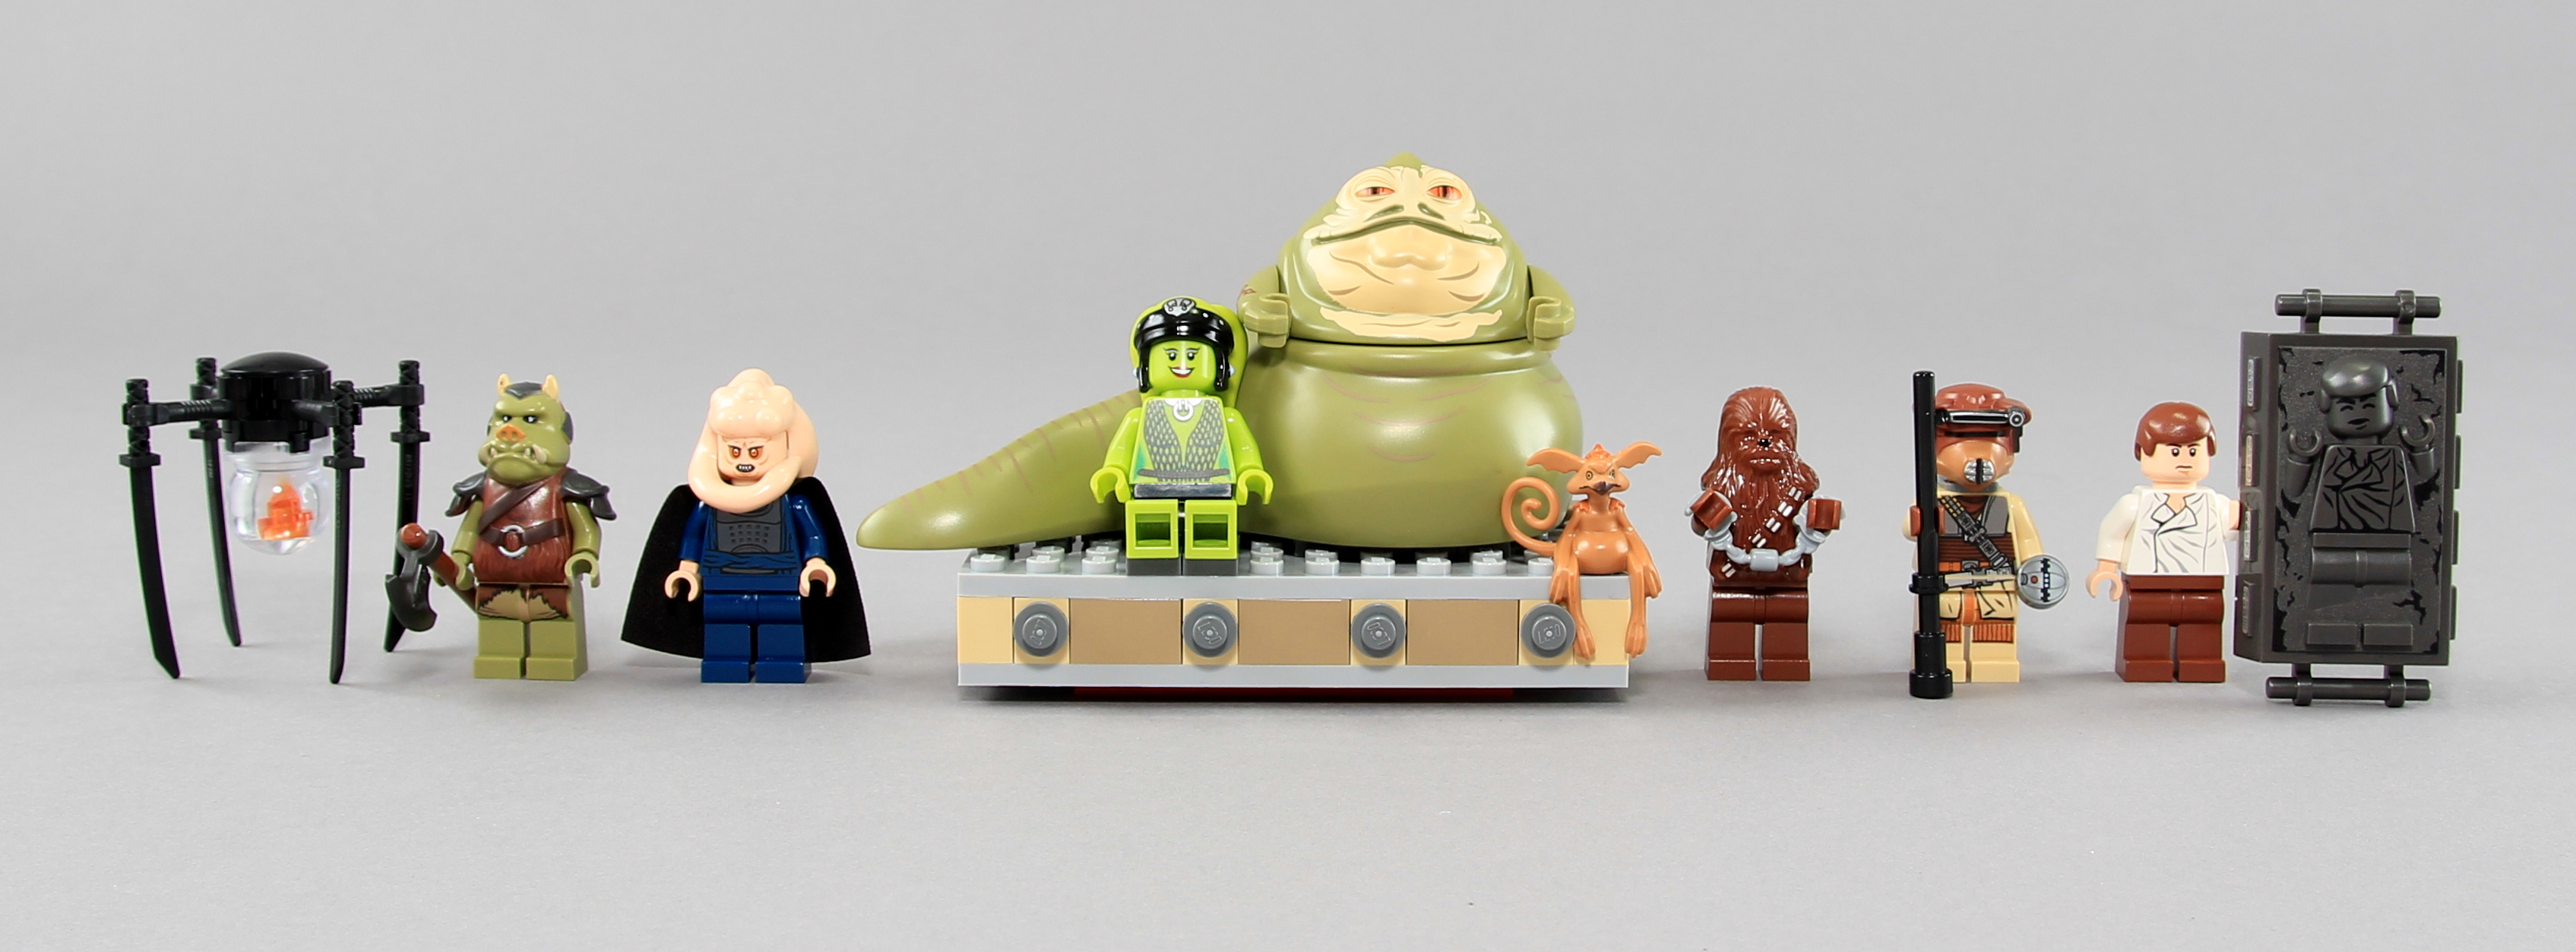 STAR WARS LEGO 9516 Jabba the Hutt Mini Fig / Mini Figure 